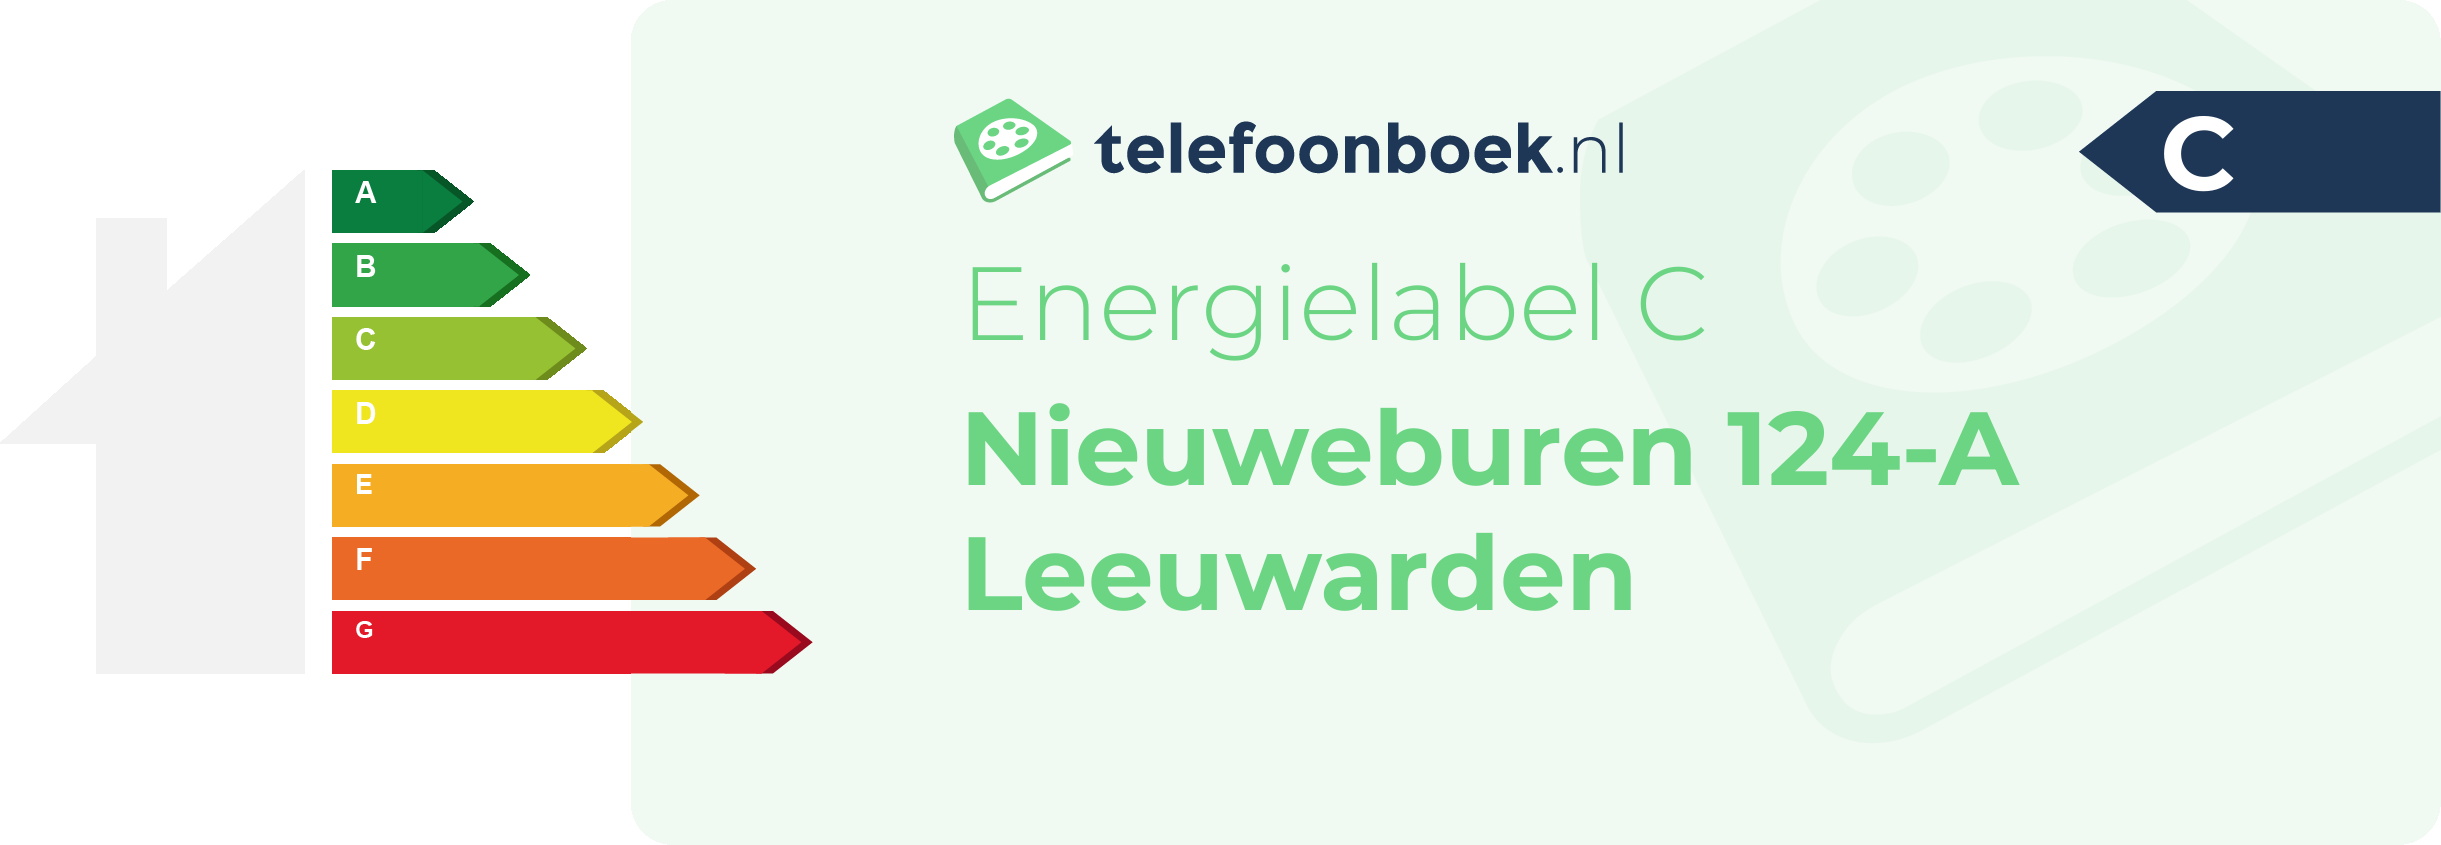 Energielabel Nieuweburen 124-A Leeuwarden